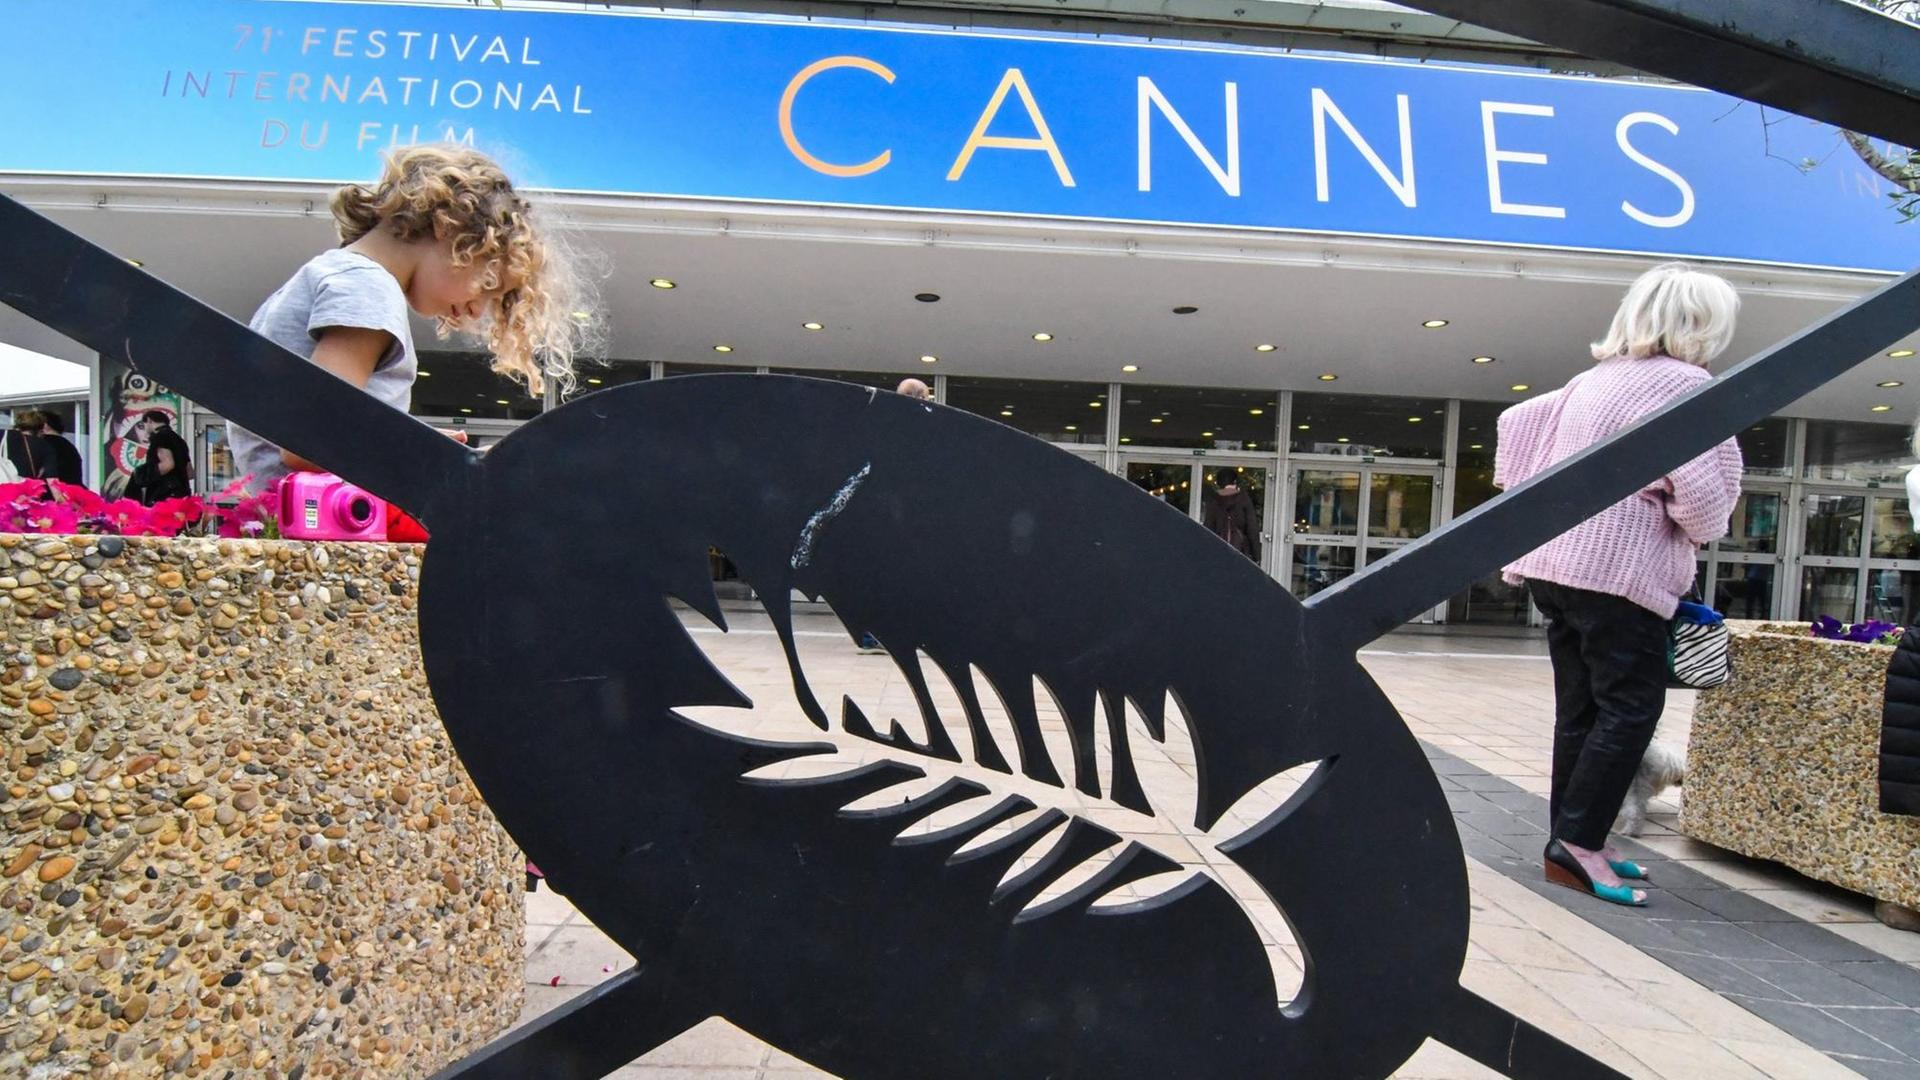 Das Bild zeigt das Logo der Filmfestspiele von Cannes, ein Palmenblatt.